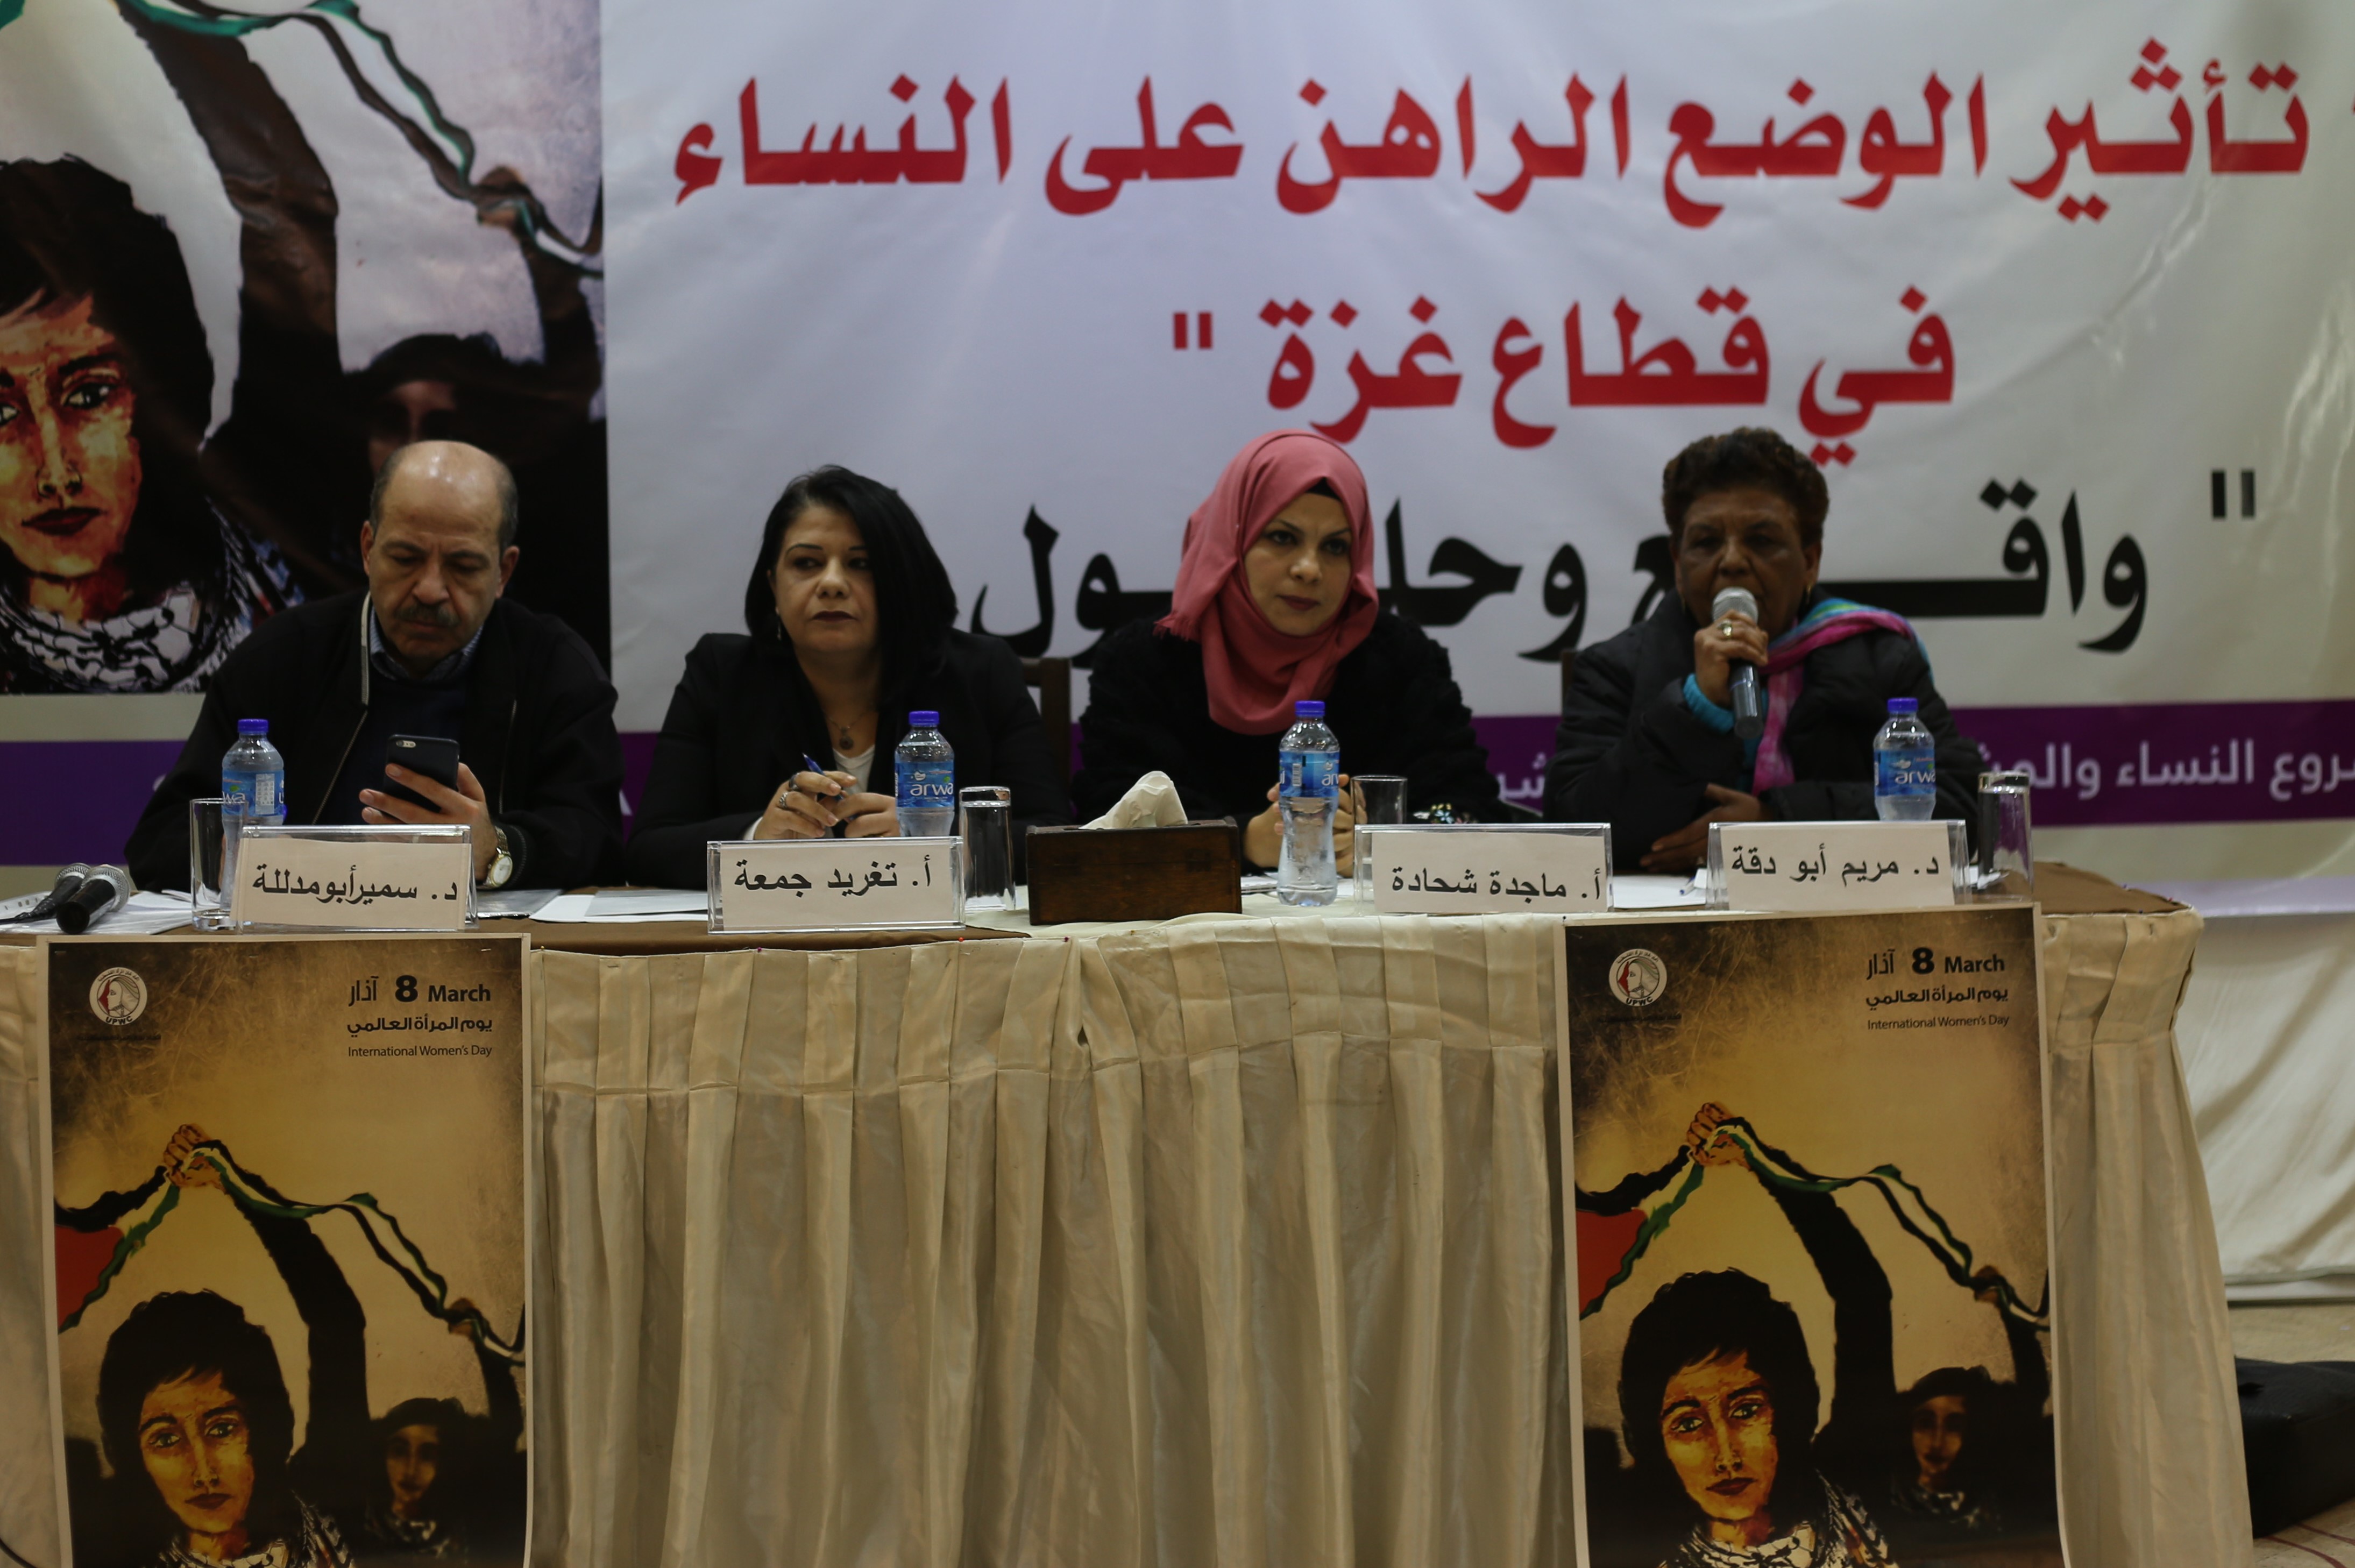 في مؤتمر حول ” تداعيات الوضع الراهن على النساء في قطاع غزة ” واقع النساء في كافة الأصعدة في قطاع غزة كارثي